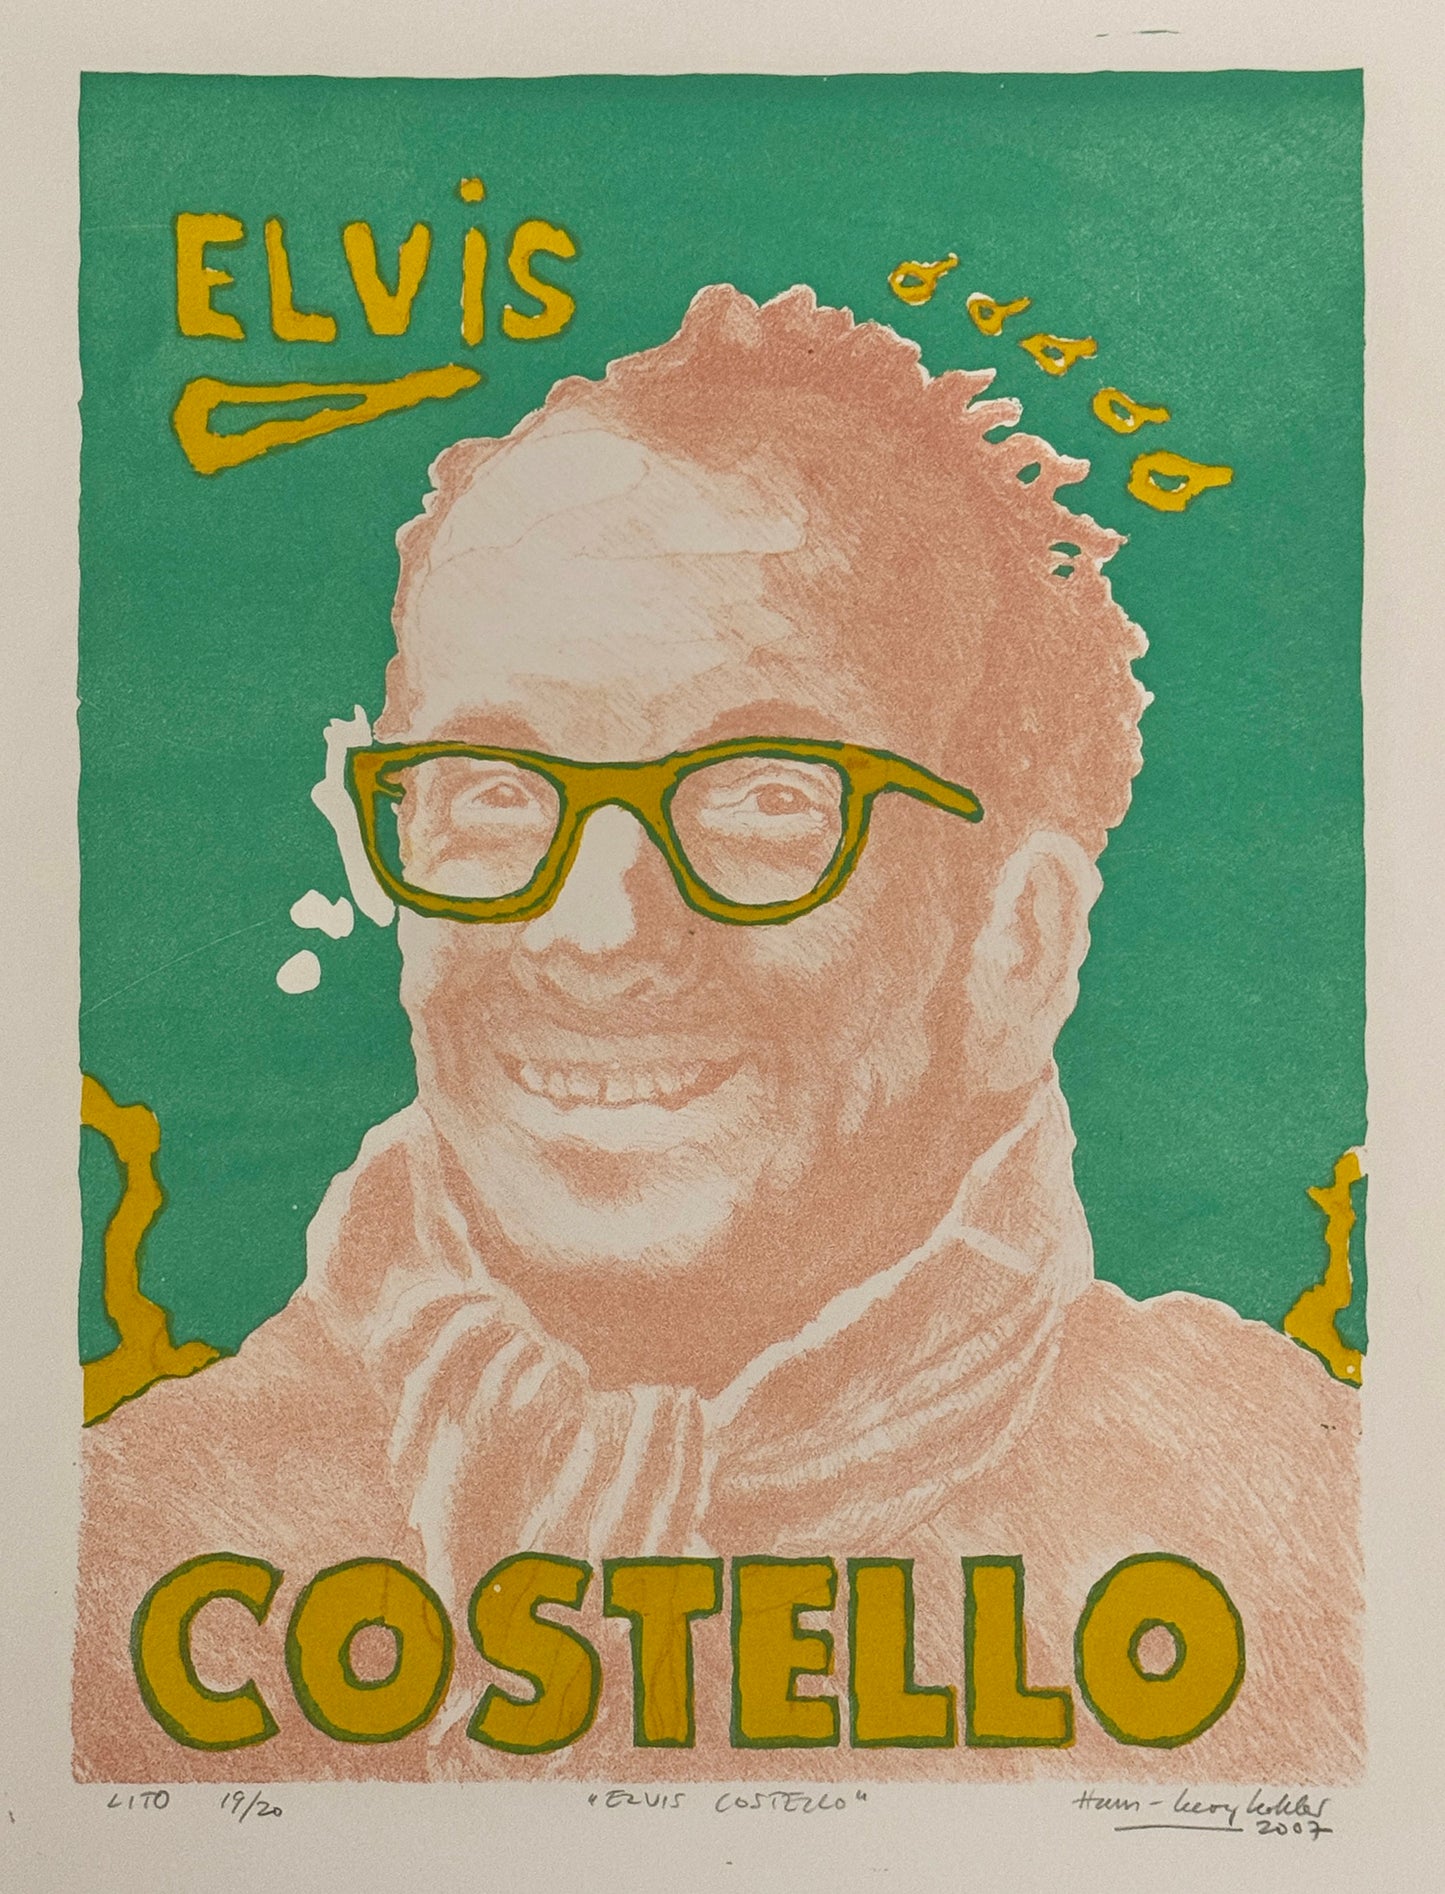 Elvis Costello av Hans-Georg Kohler - Galleri EKG AS